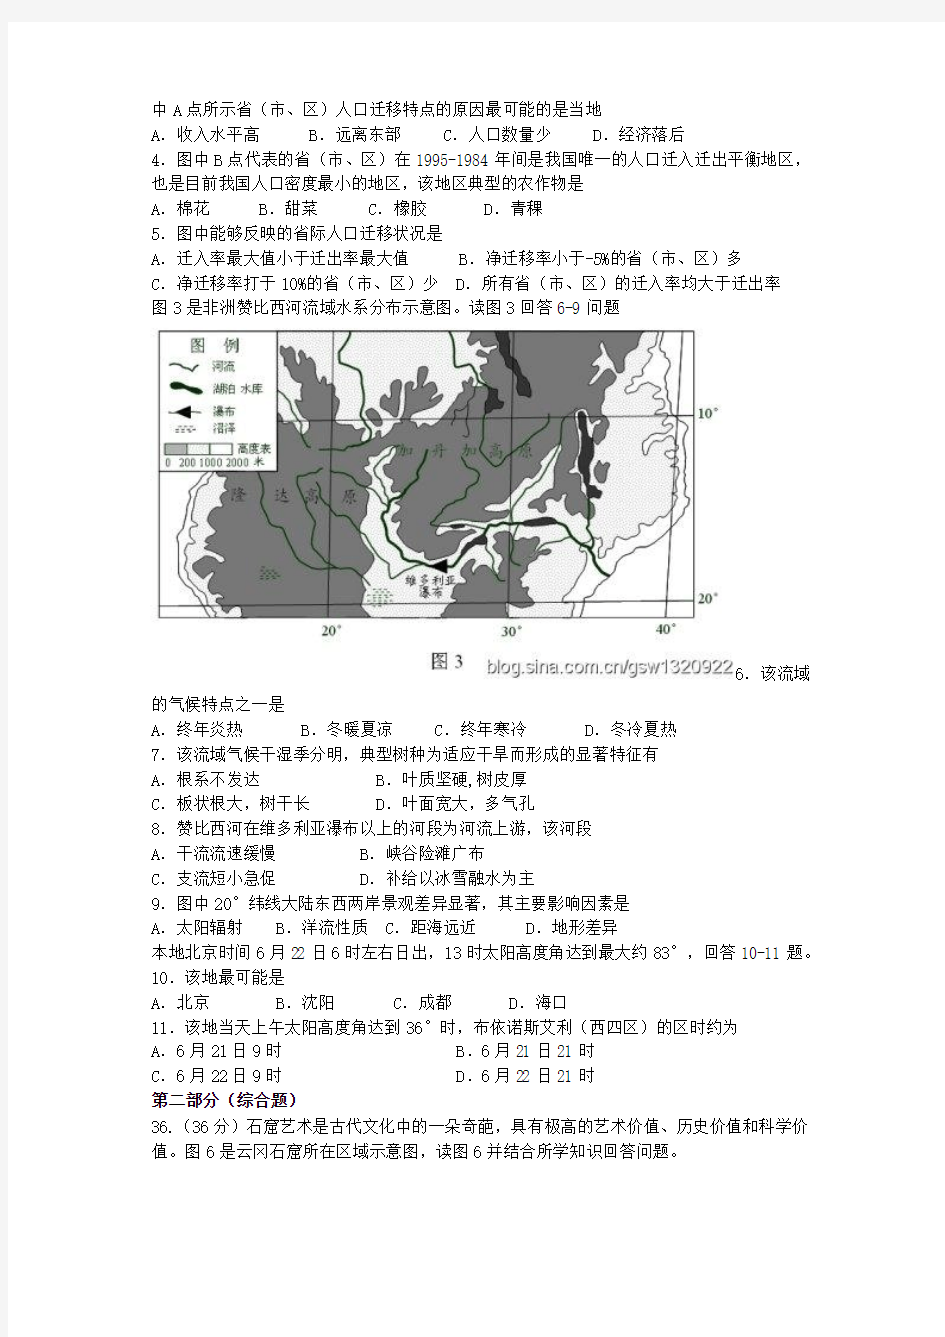 2011年高考文科综合能力测试(重庆卷)地理部分(清晰word版)